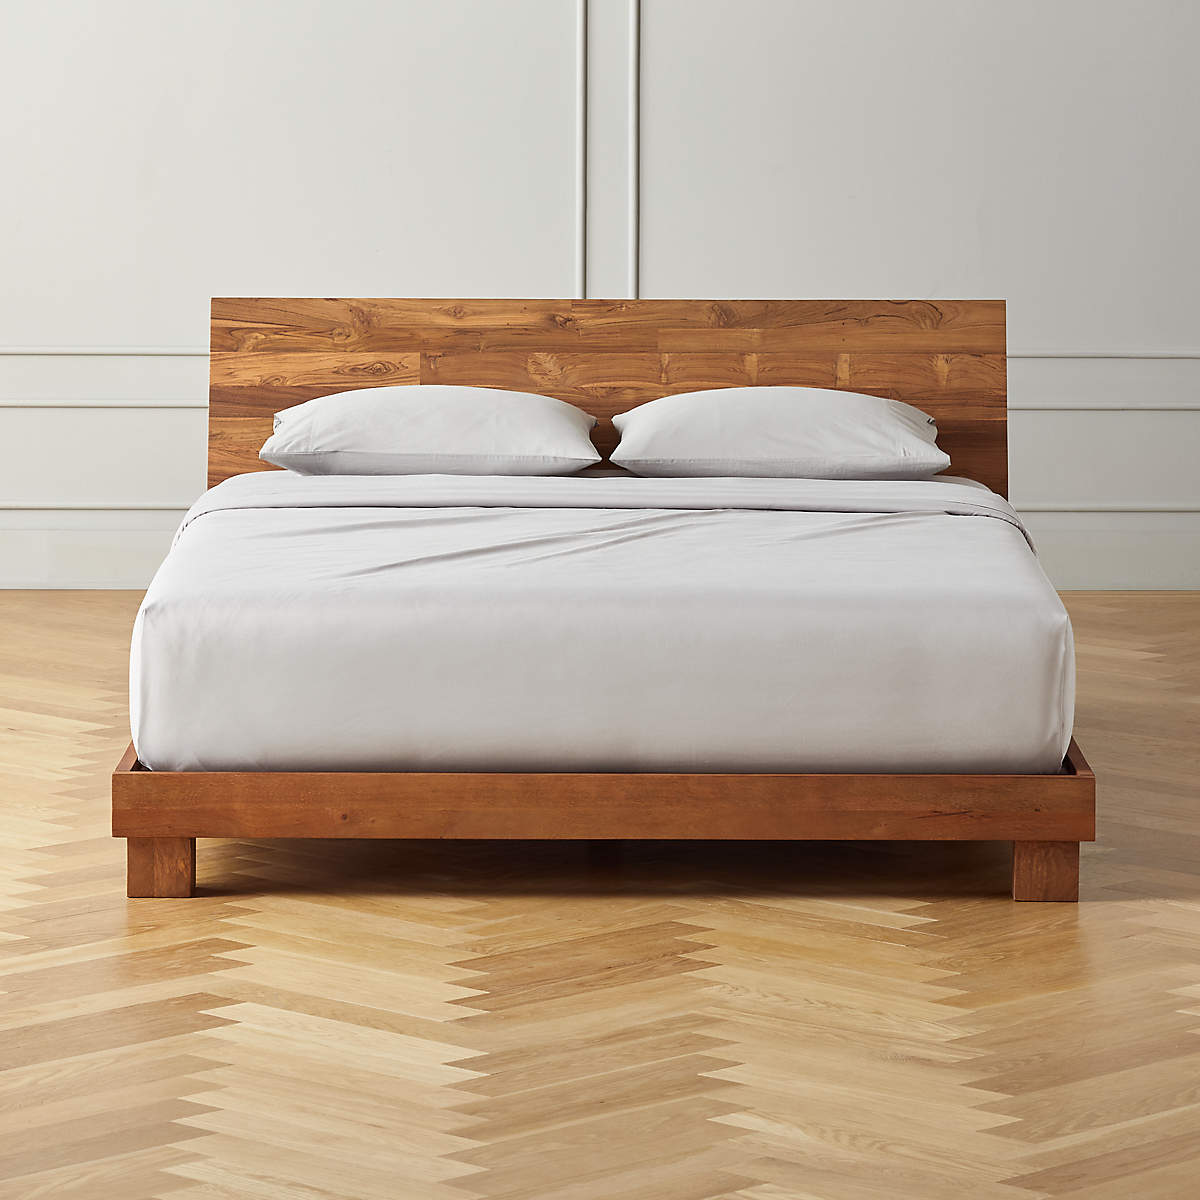 Handcrafted Teak Wood Bed Frames